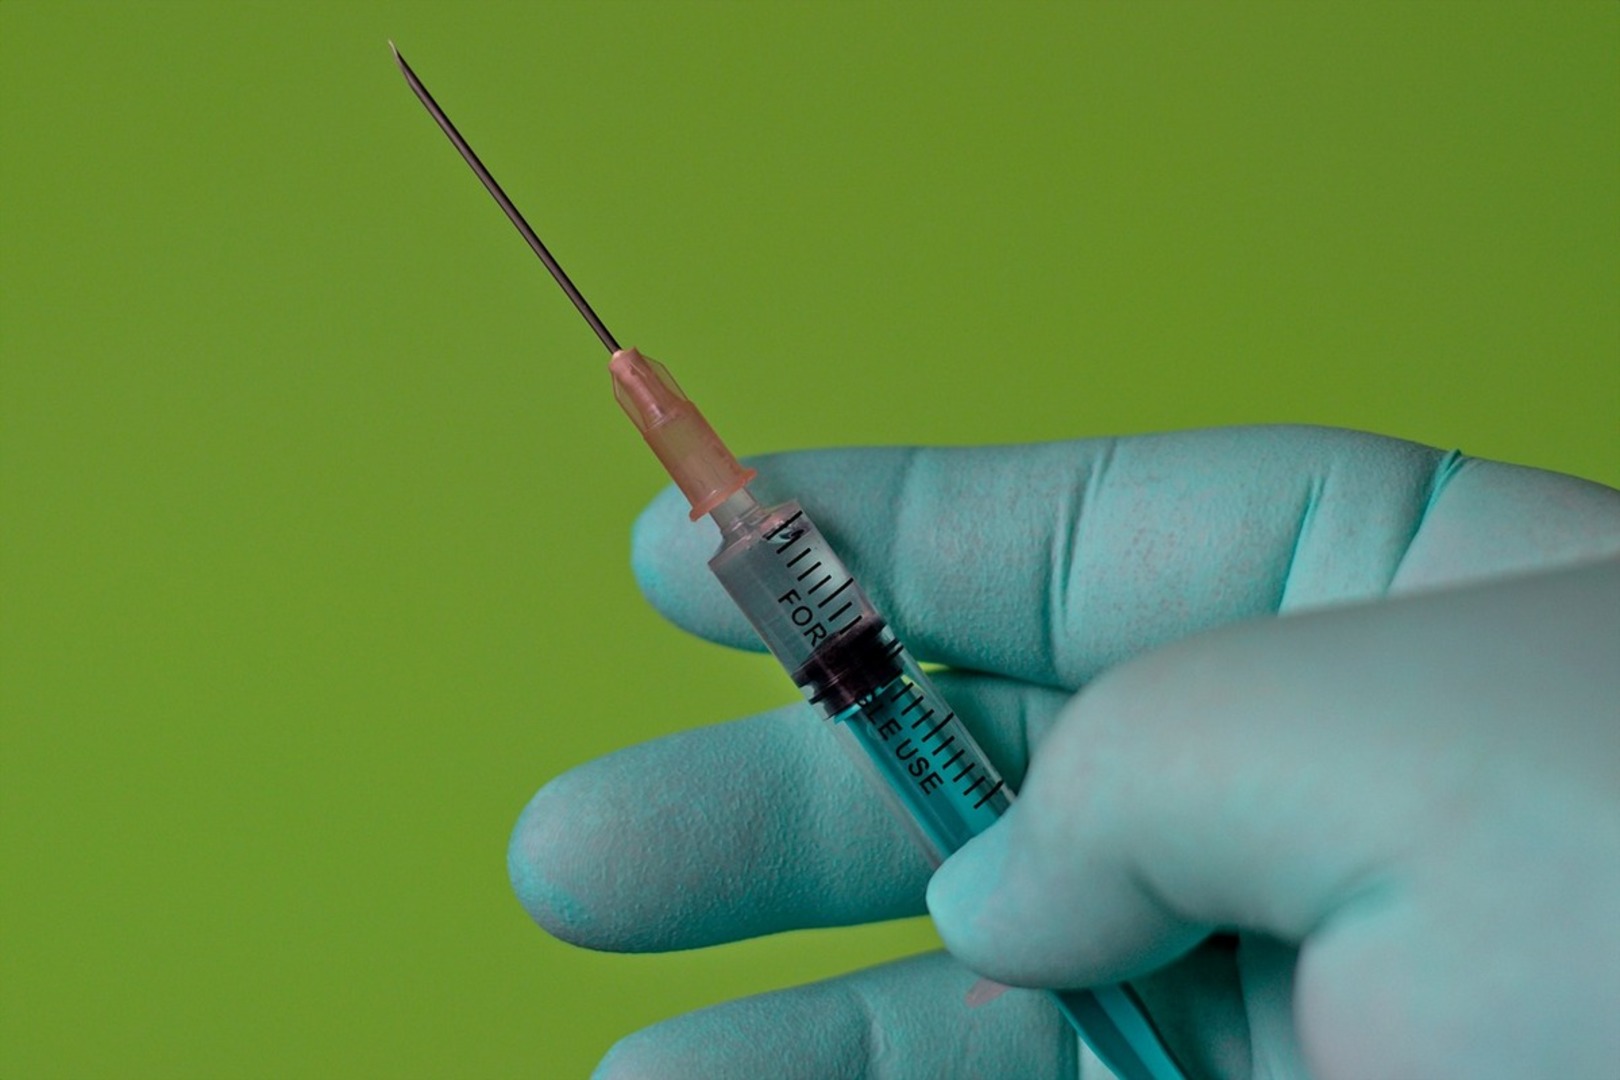 Bezpłatne szczepienia przeciwko wirusowi brodawczaka ludzkiego HPV